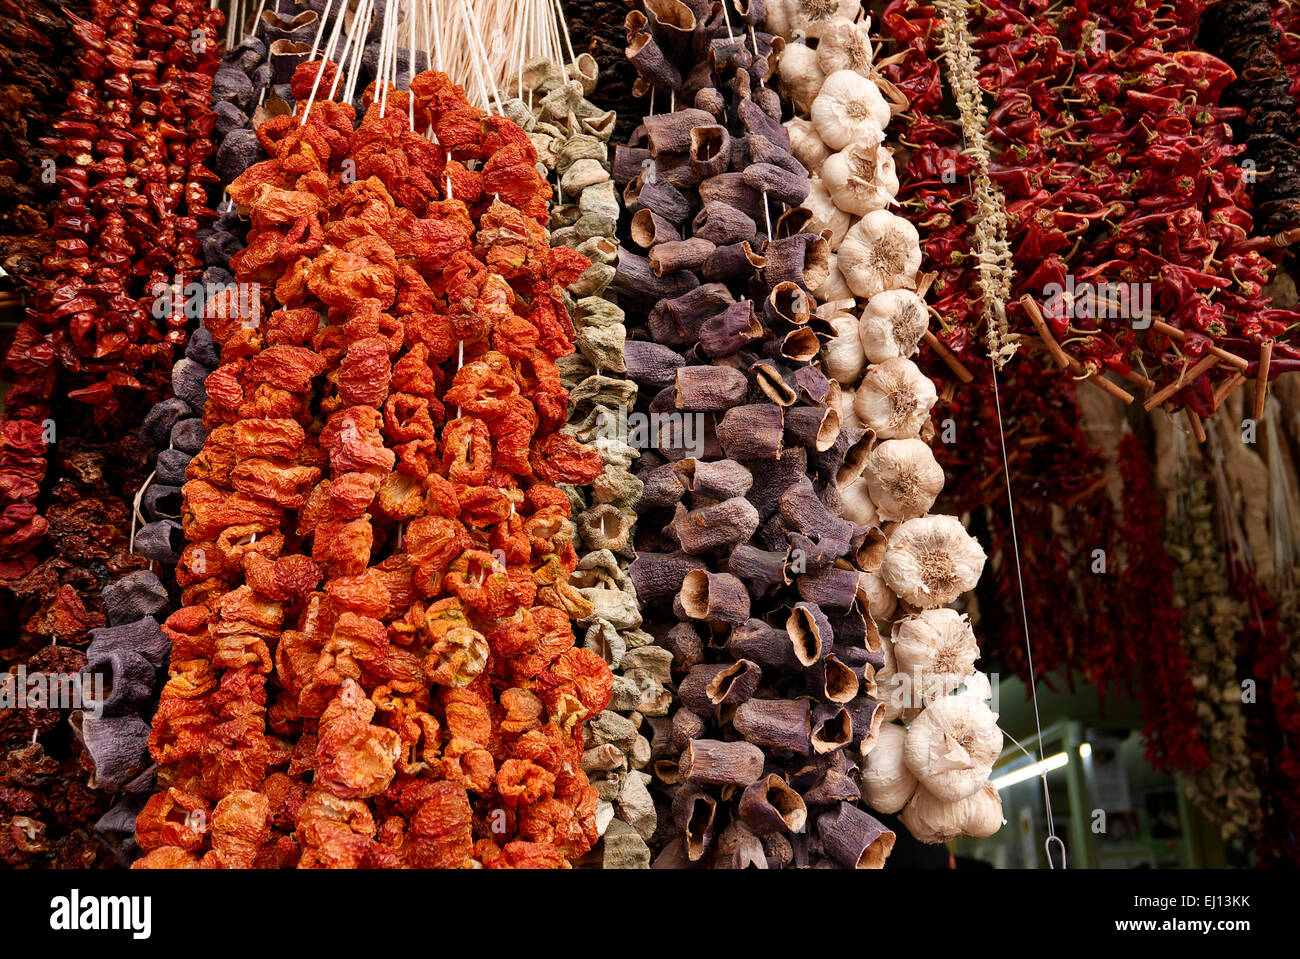 greece athens monastiraki evripidou street a shop called fotsi selling dried spices Stock Photo